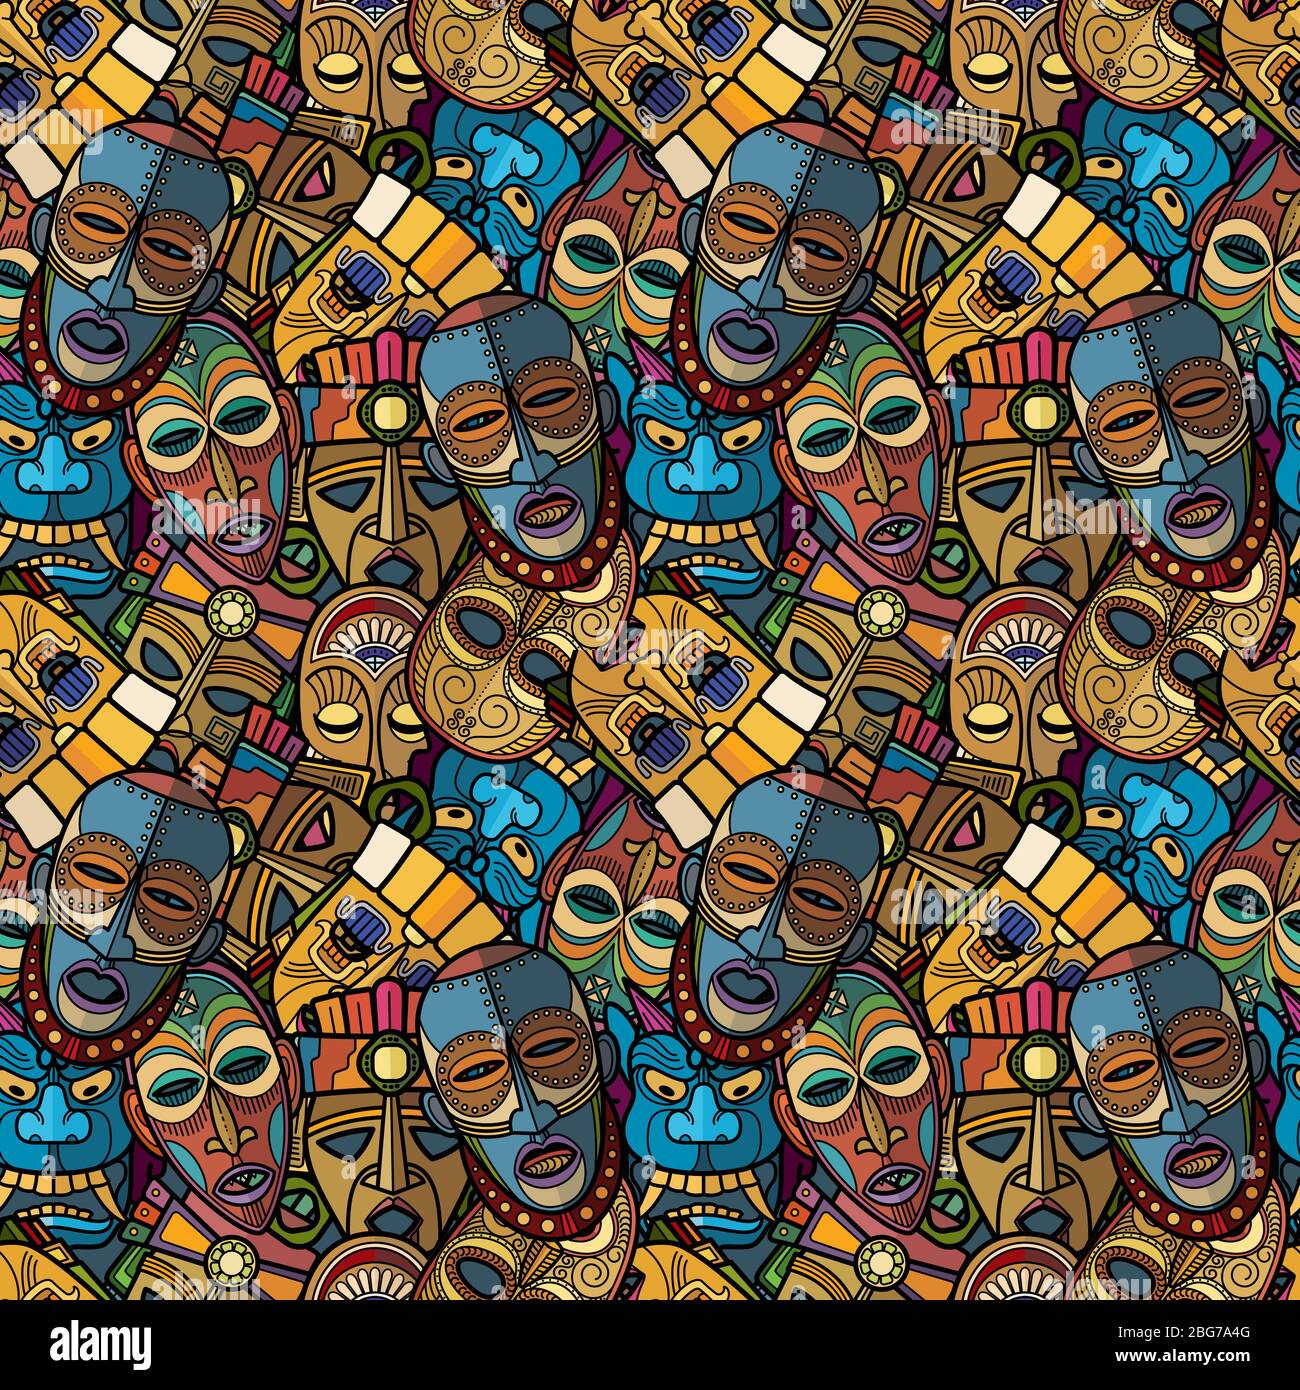 Maschera tribale voodoo artigianale africana e simboli totem cultura sudamericana inca modello senza giunture. Illustrazione vettoriale Illustrazione Vettoriale